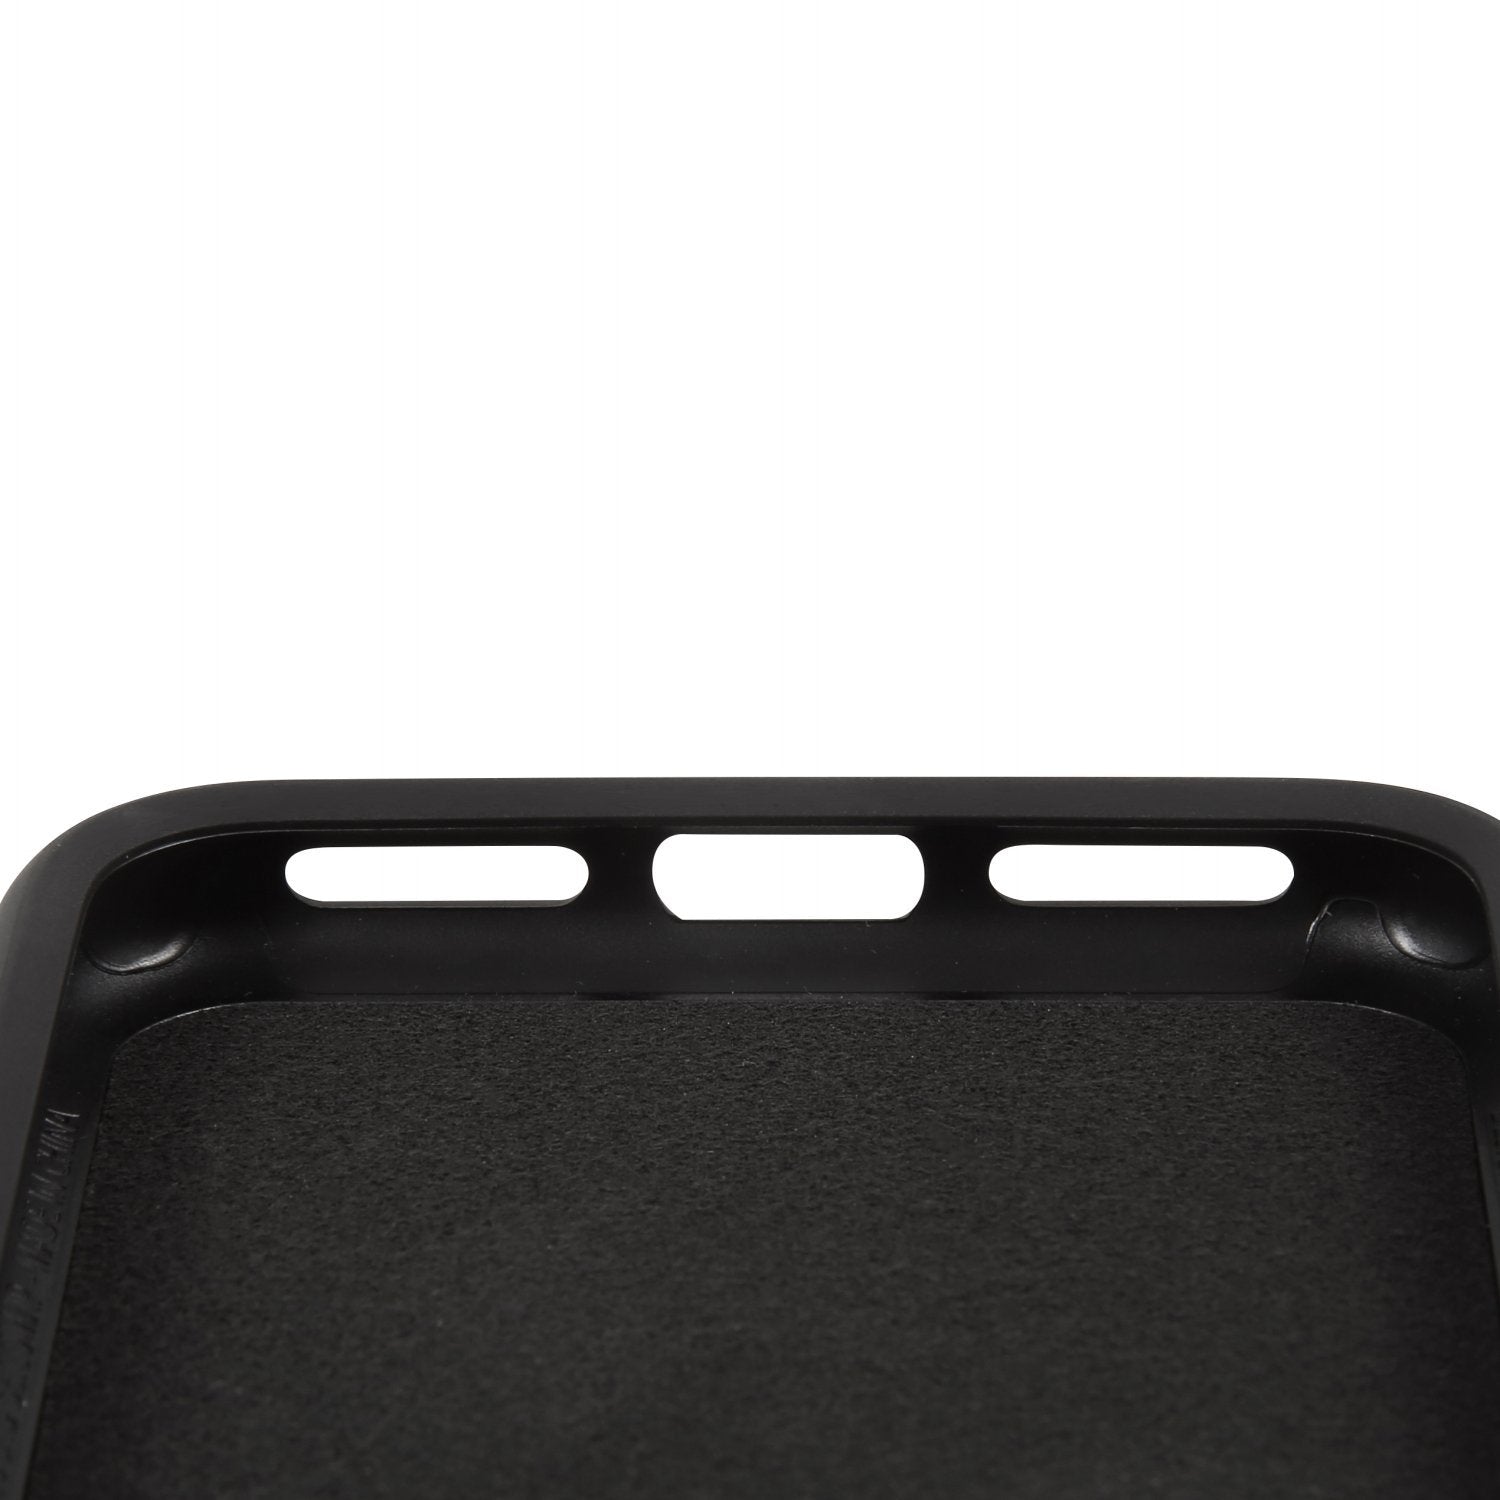 iPhone 11 Pro | スマホケース スタンダード - Quad Lock